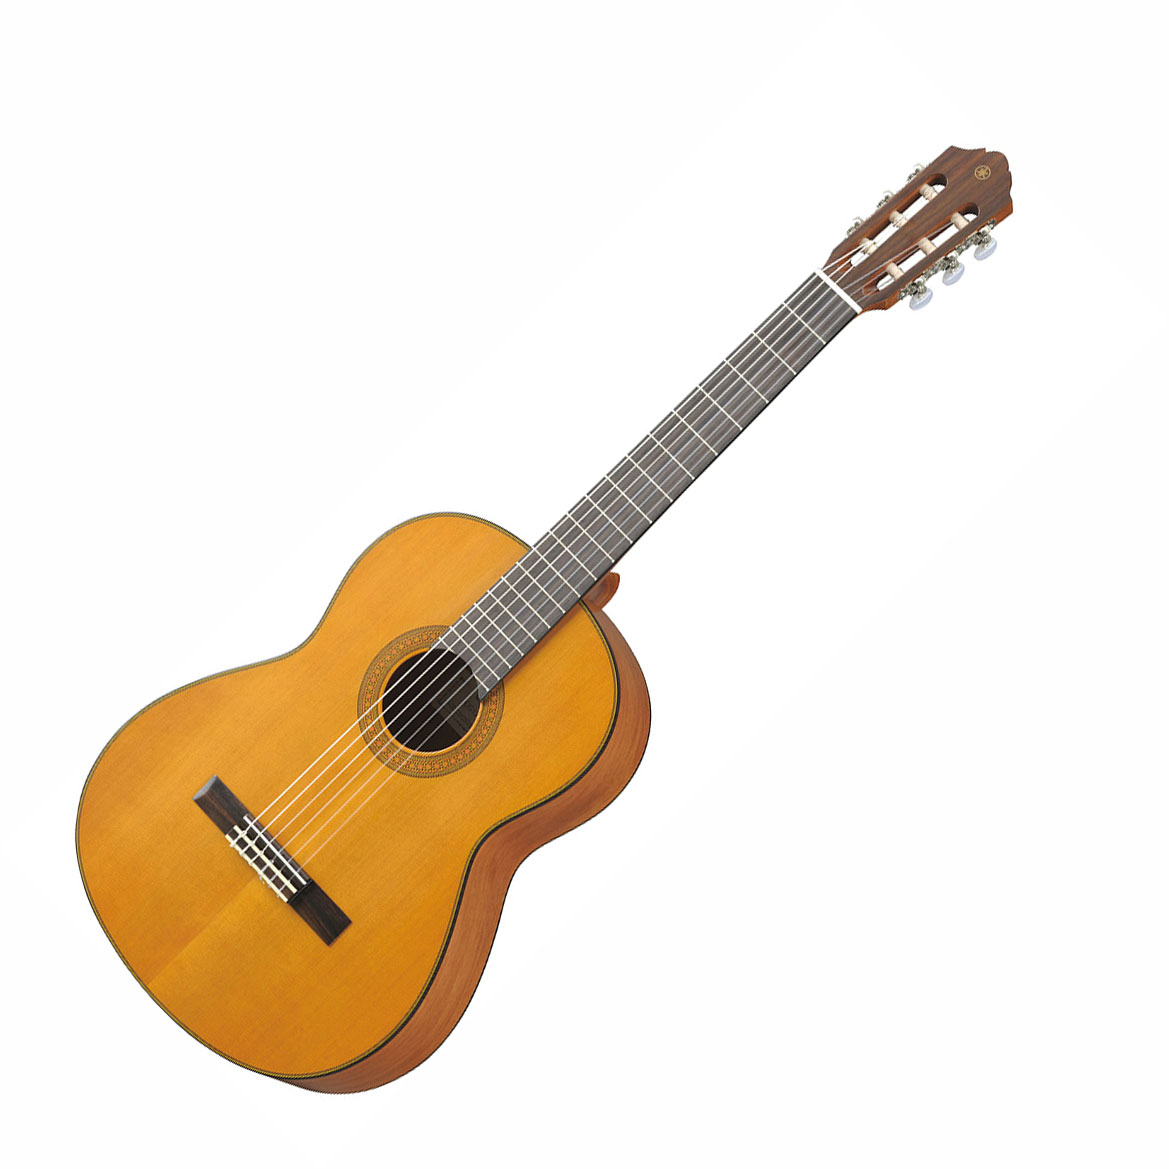 YAMAHA CG122MC クラシックギター 650mm ソフトケース付き 表板:杉単板